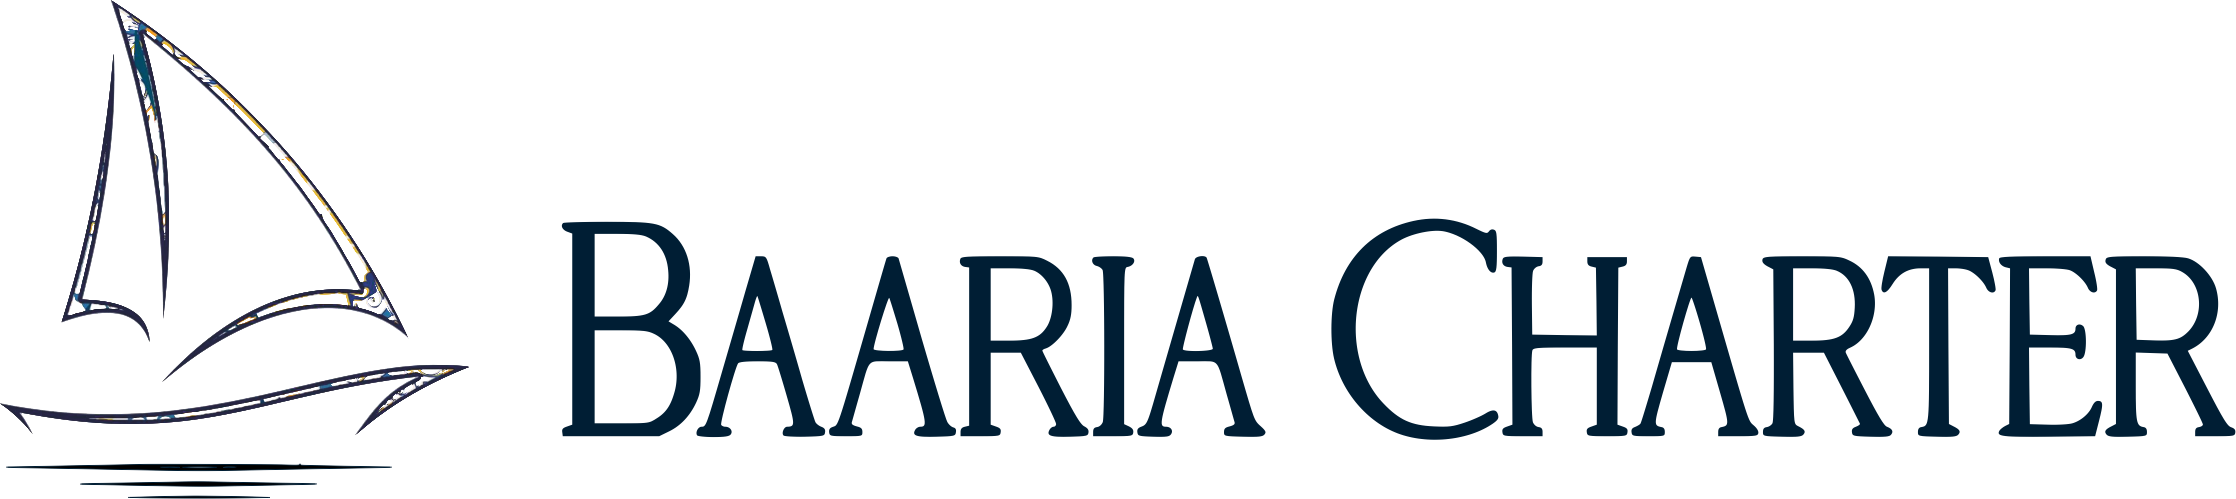 Baaria Charter